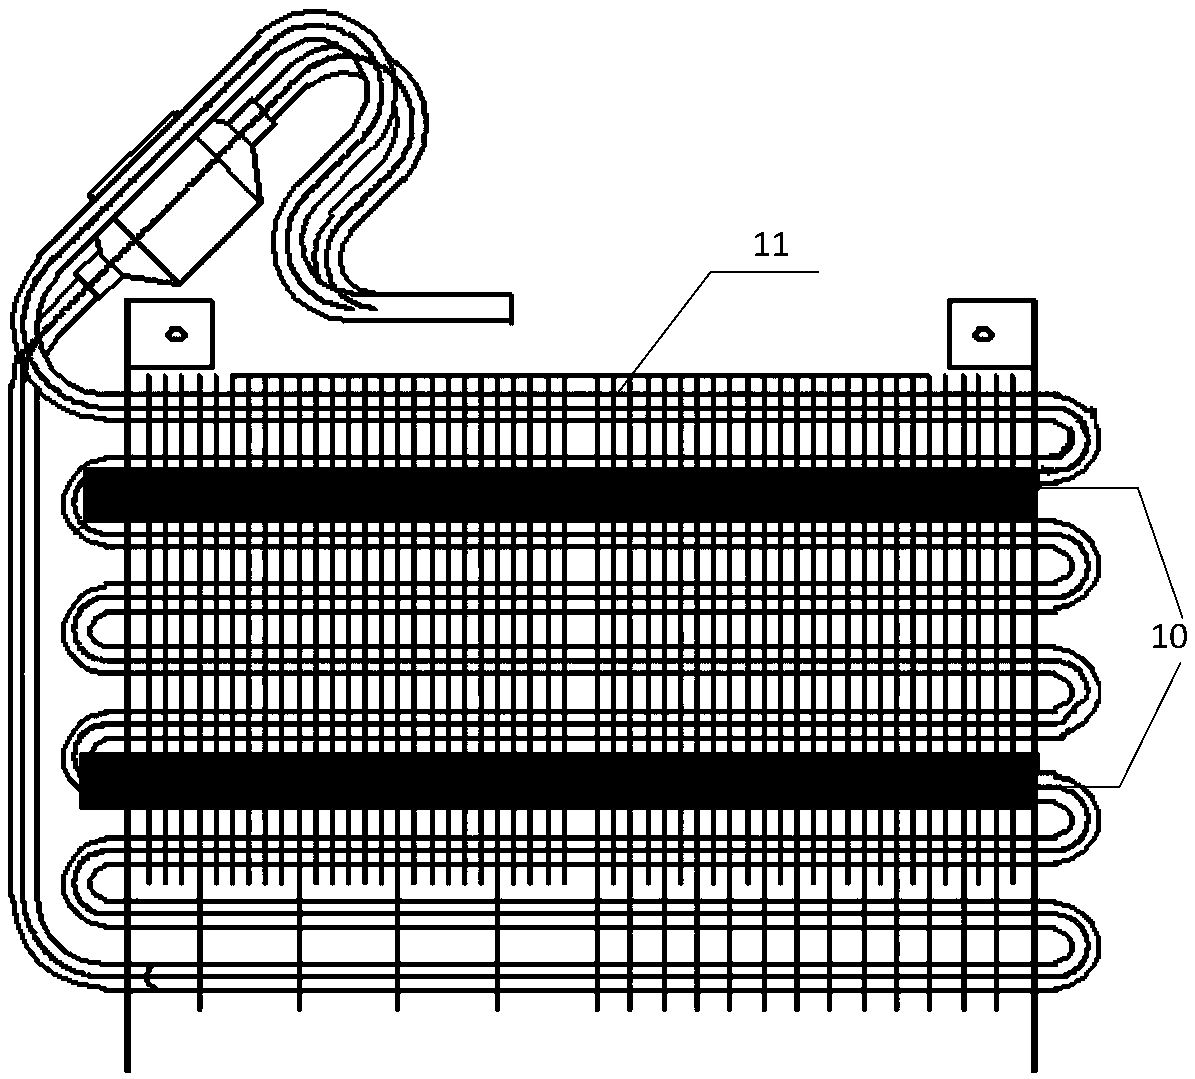 Evaporator deicing device